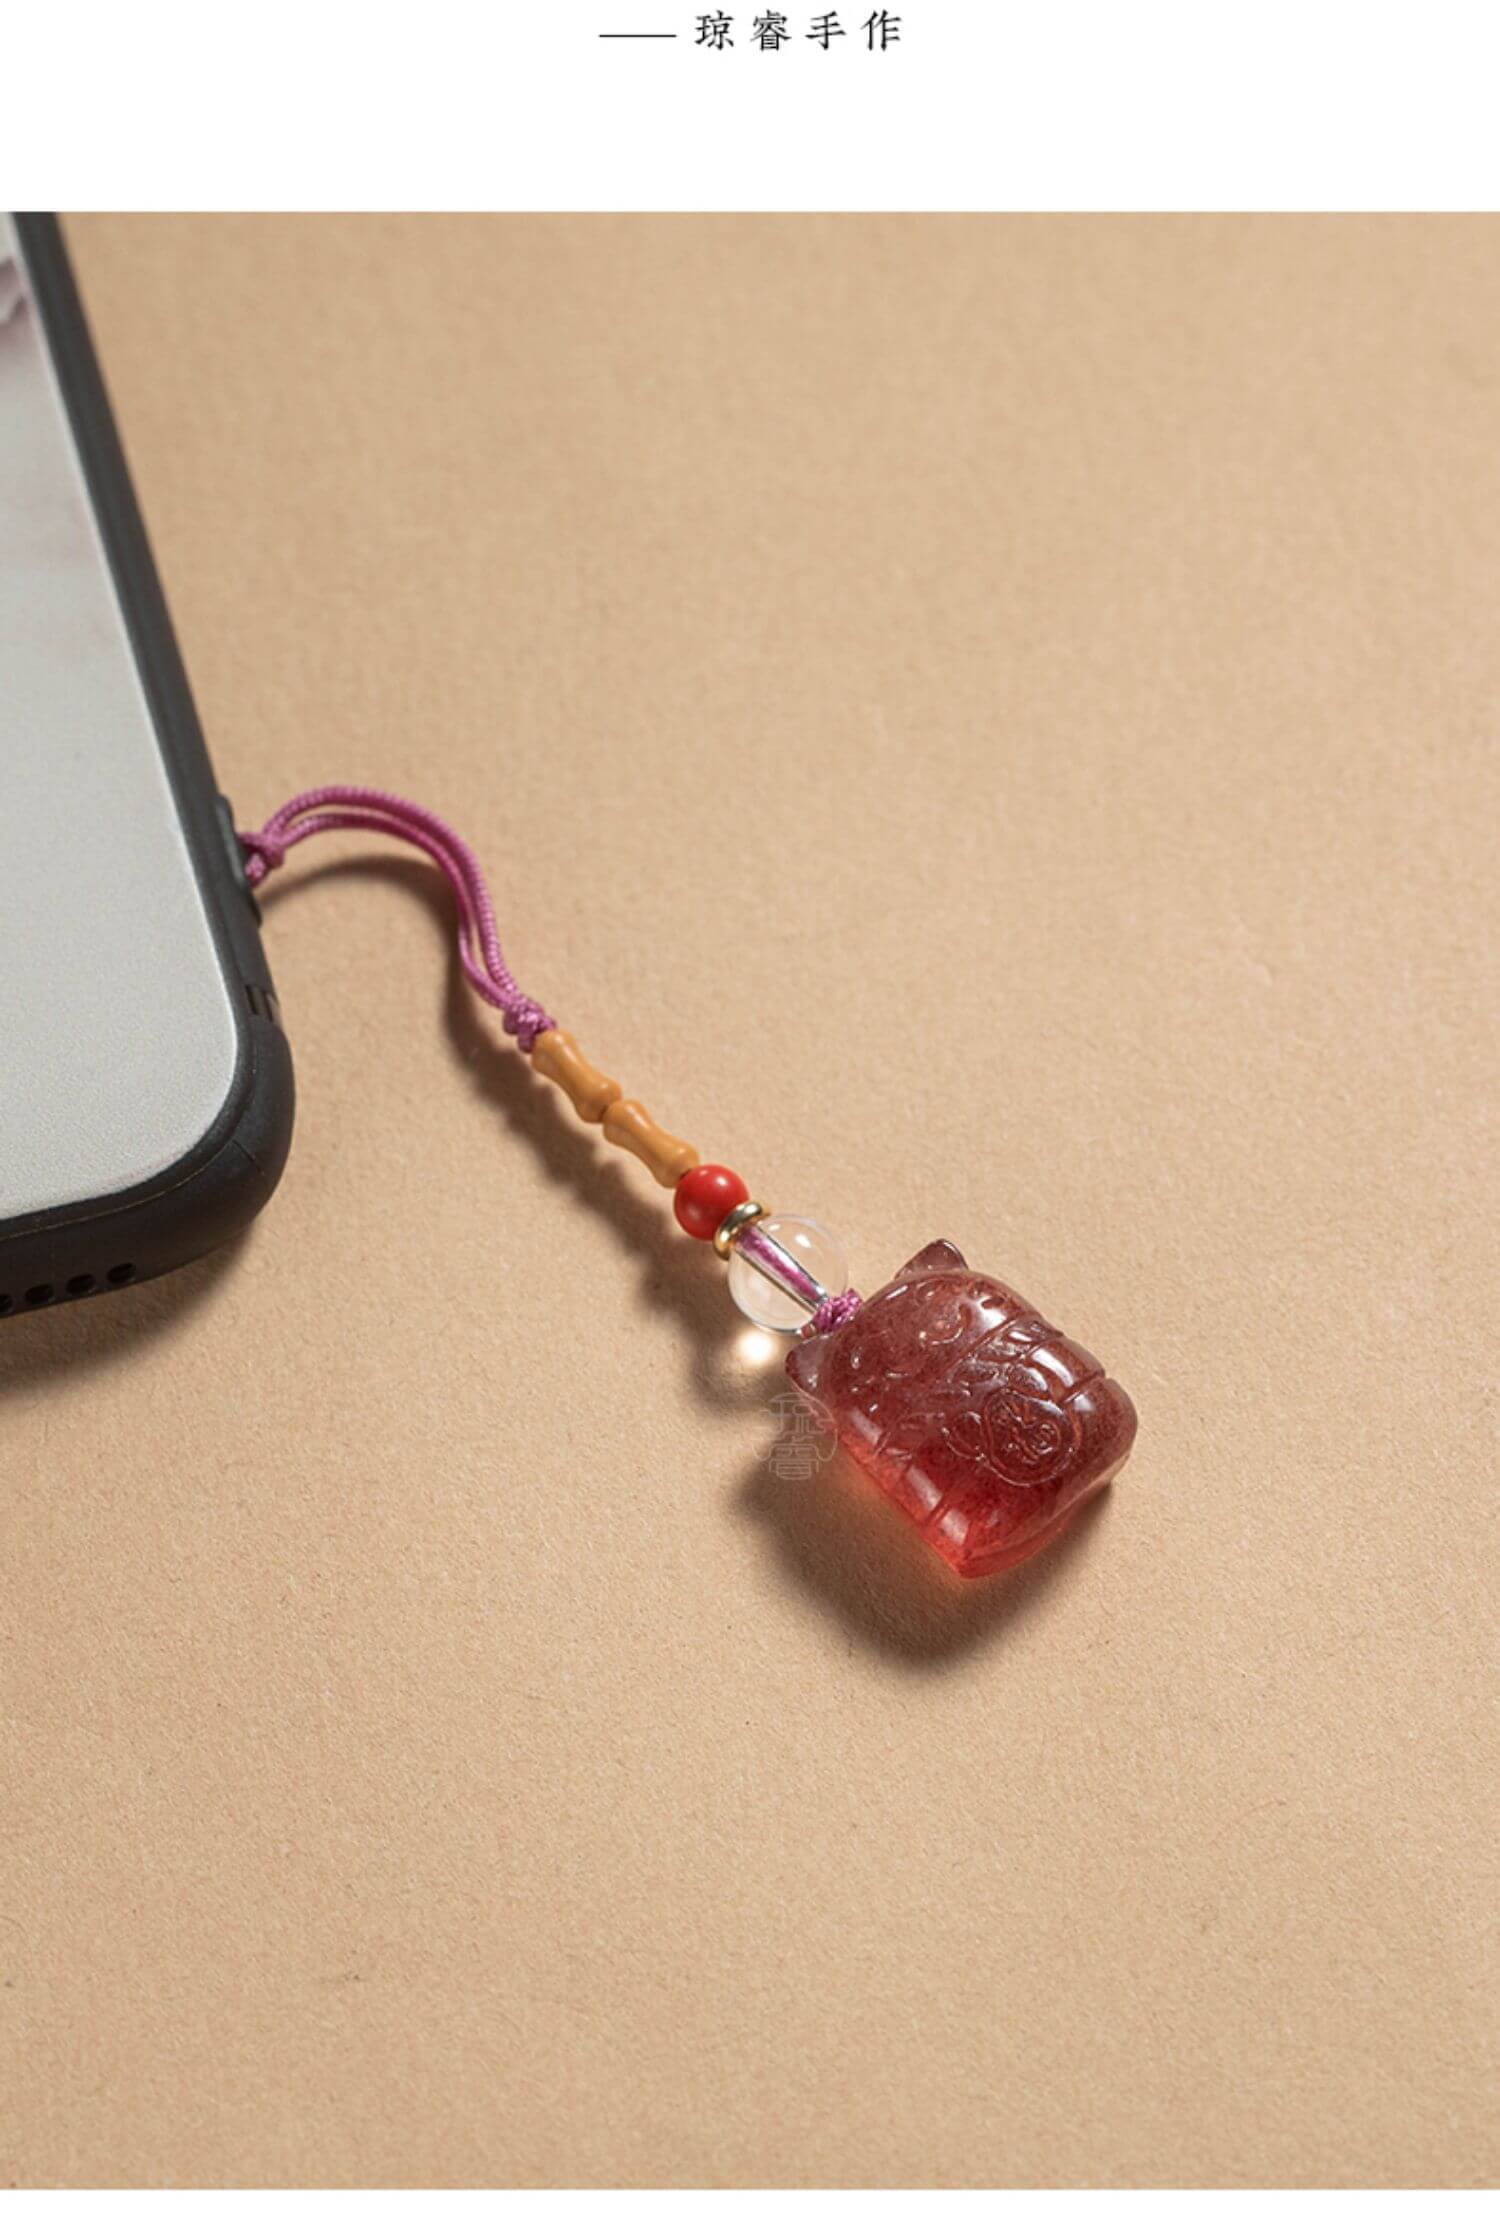 正桃花~天然草莓水晶手機掛繩鏈